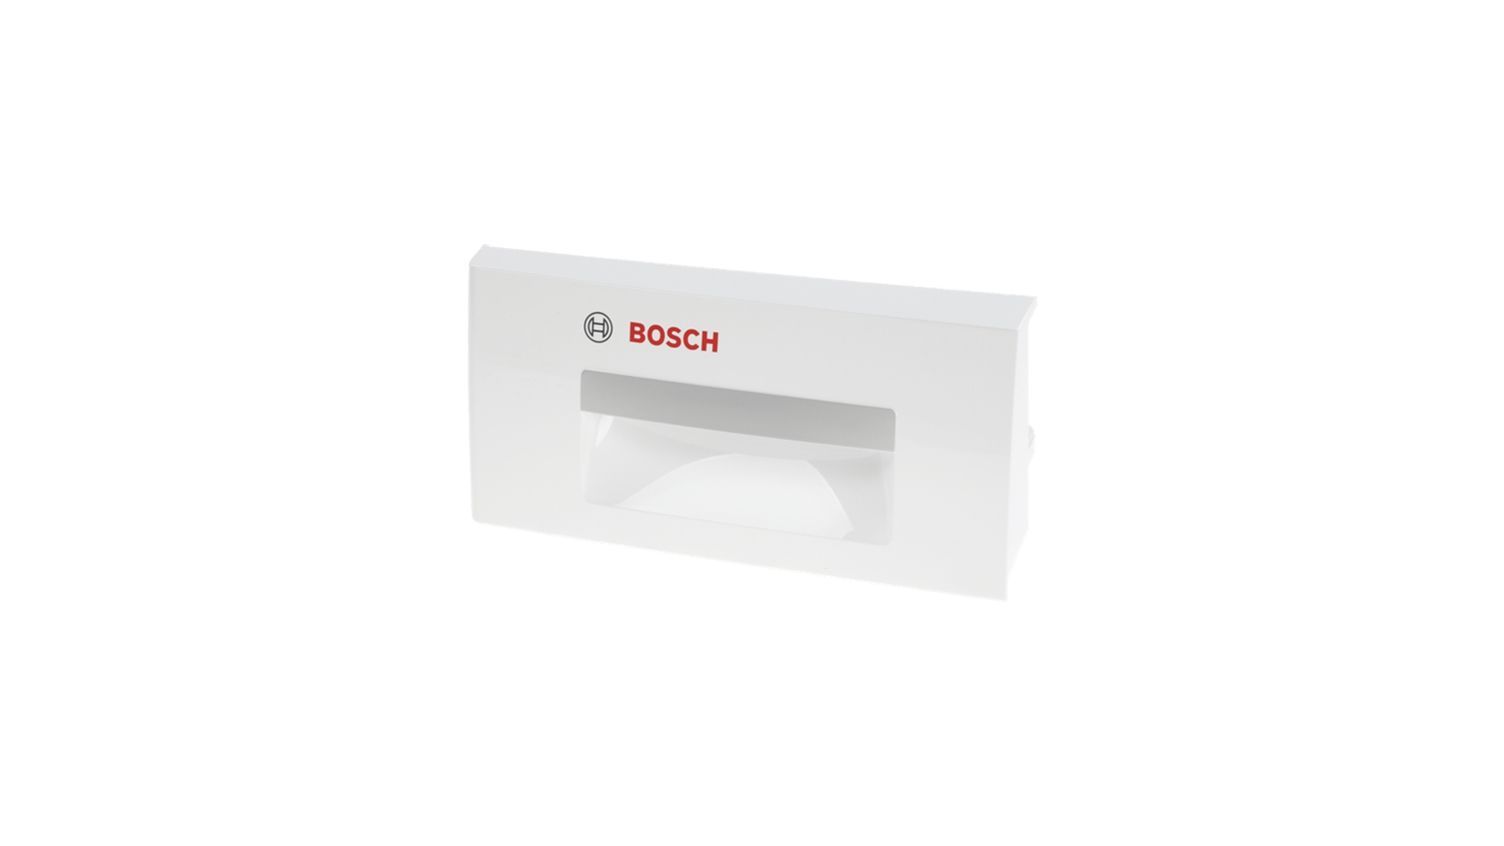 Rukojeť dávkovače pracího prášku do sušiček Bosch Siemens - 12004201 BSH - Bosch / Siemens